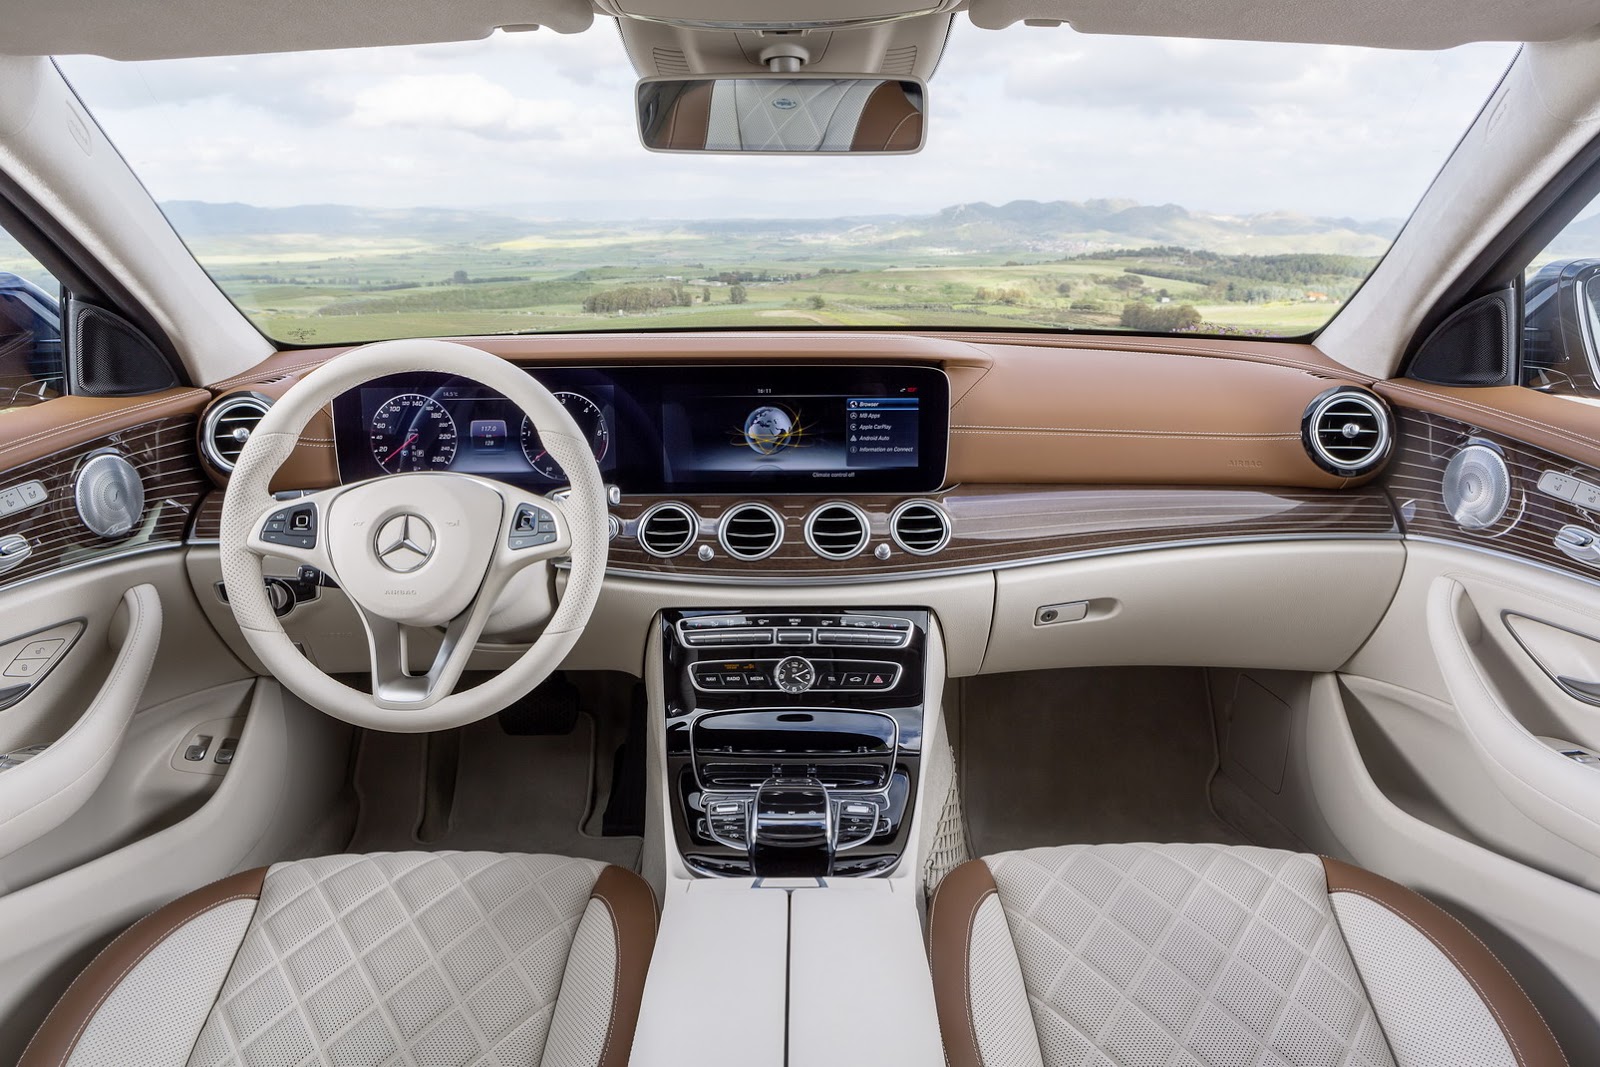 New 2017 Mercedes-Benz E-Class Estate Unveiled, Gets 396HP E43 AMG ...